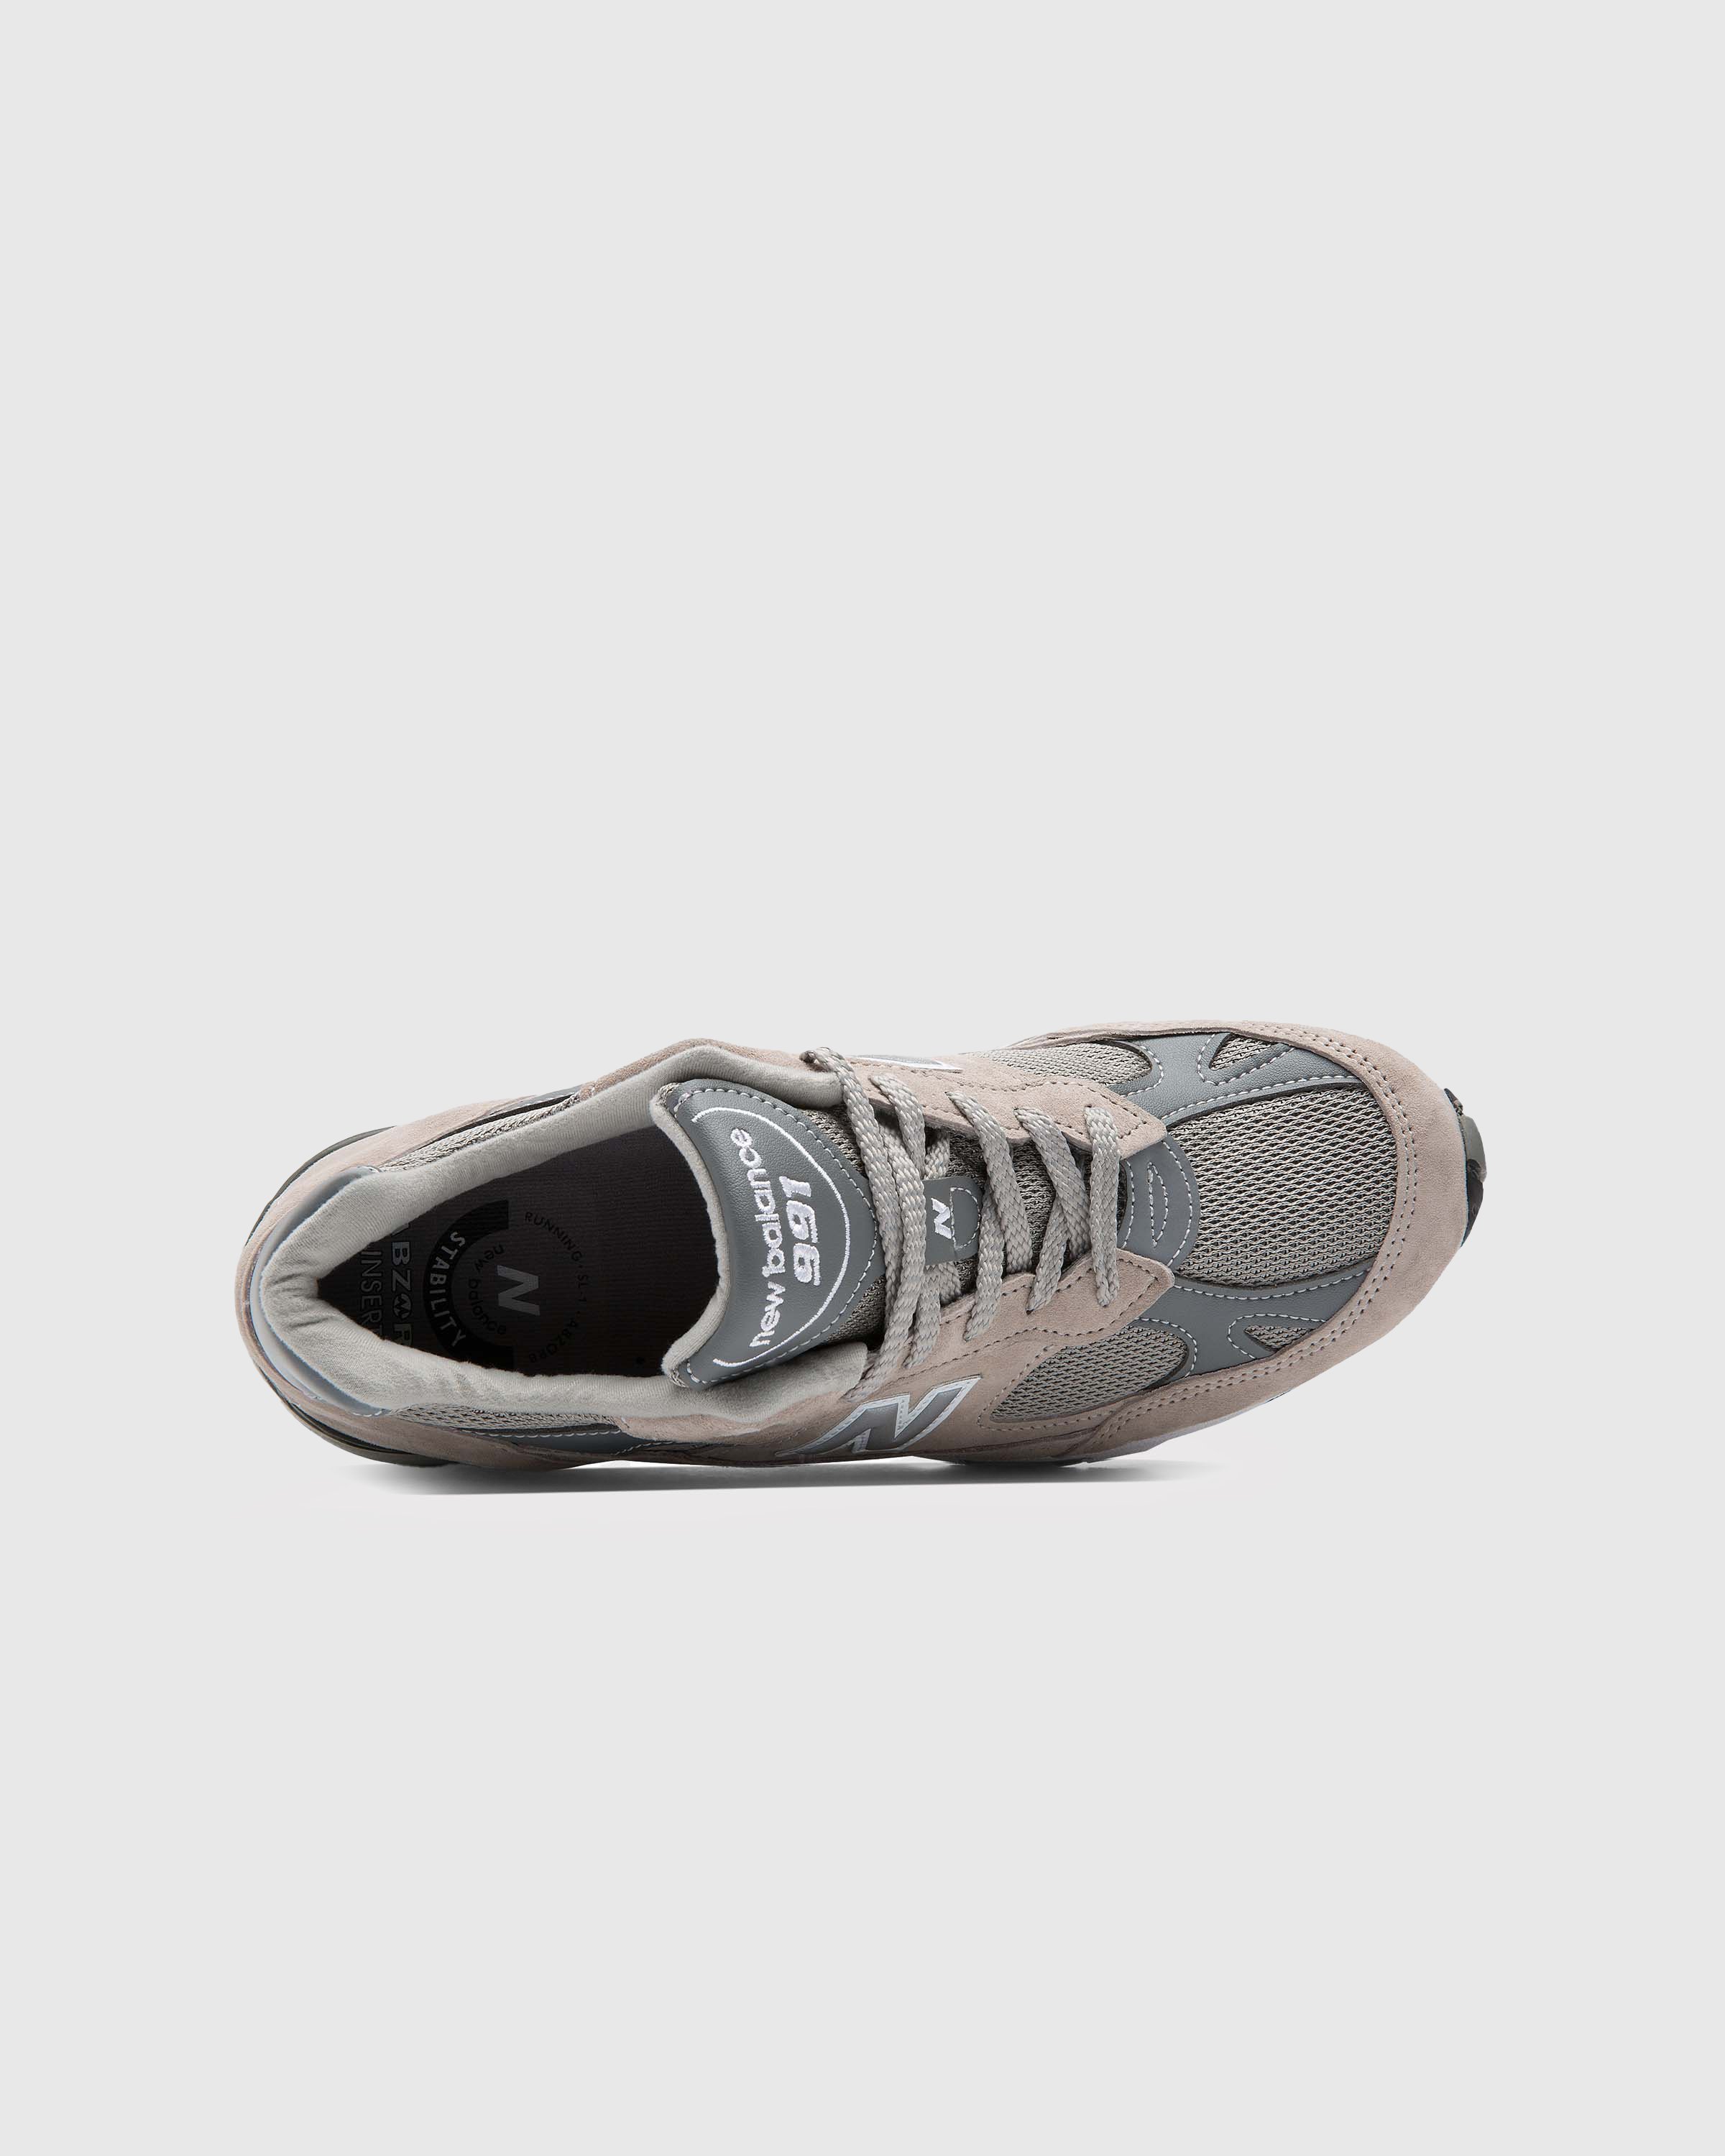 New Balance - M991GL Grey - Footwear - Grey - Image 3